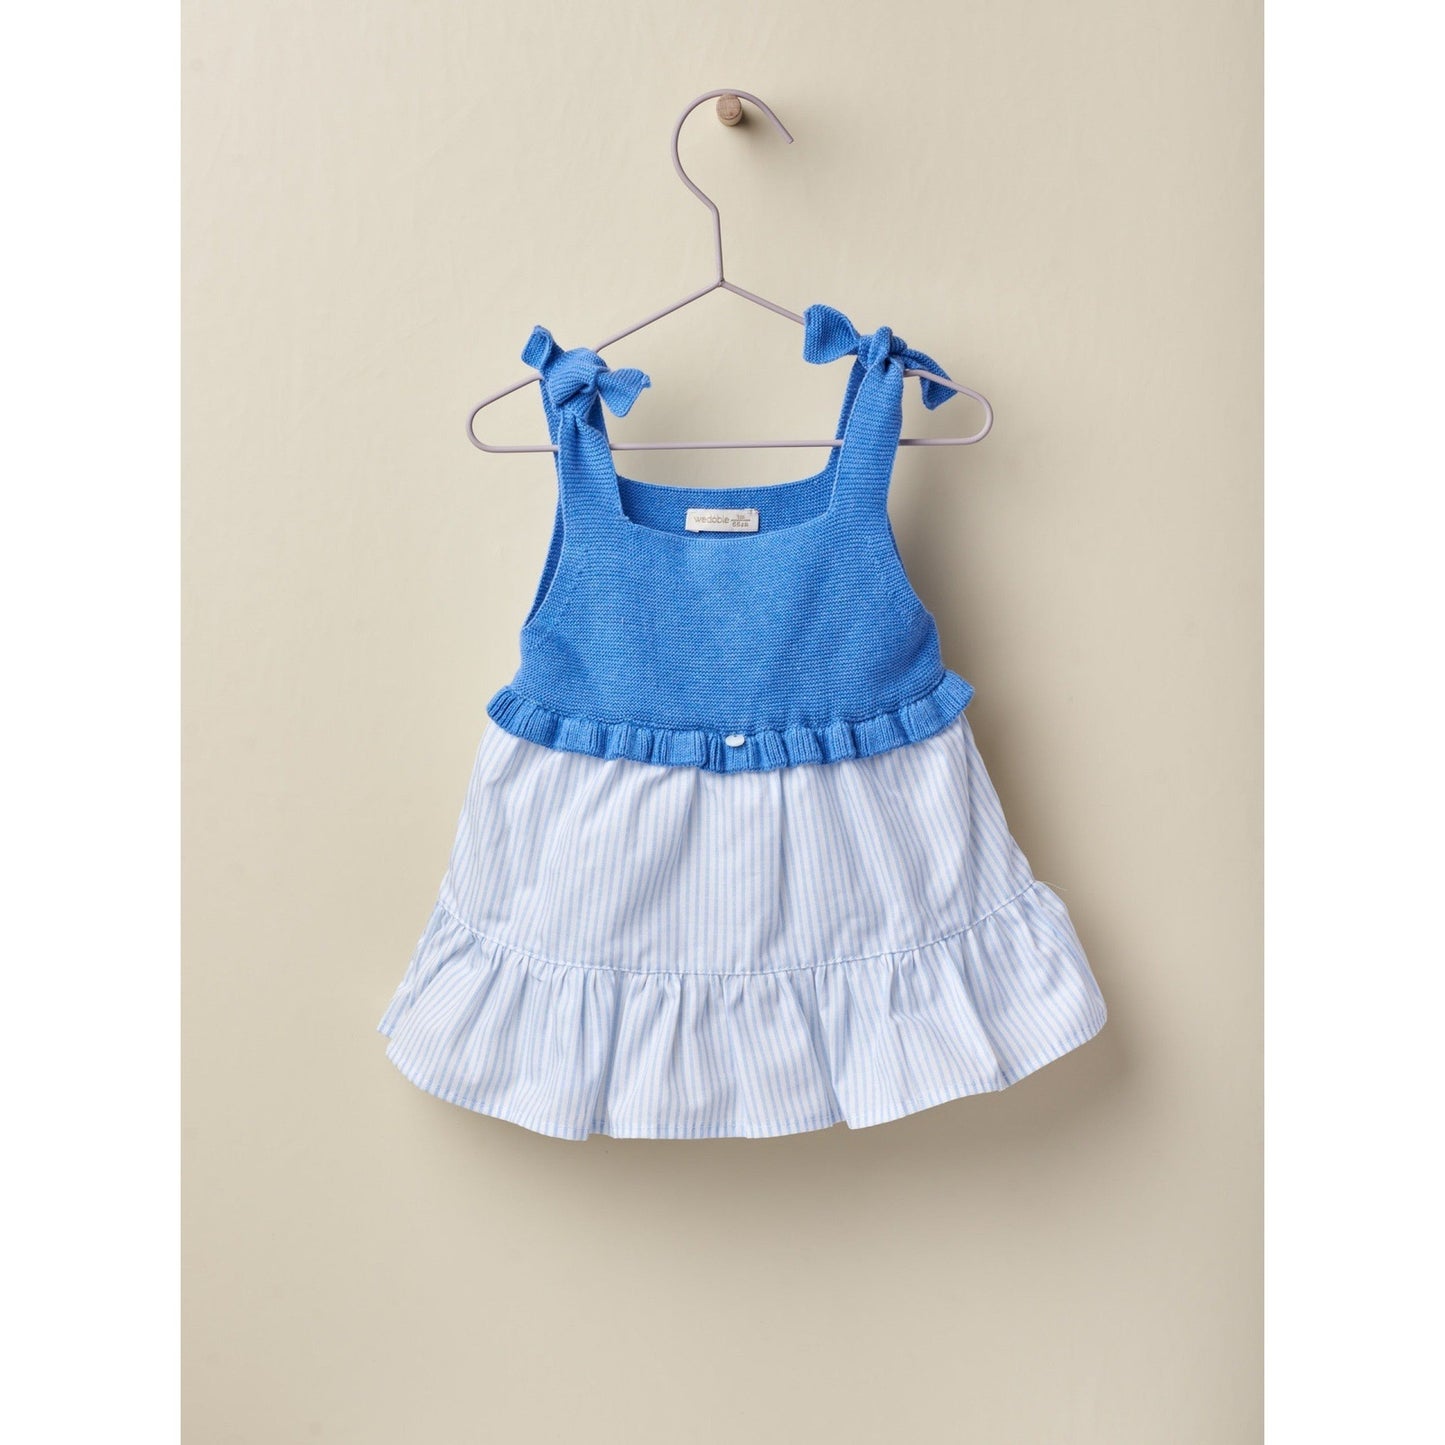 Blue Summer Dress 129 - Lala Kids 